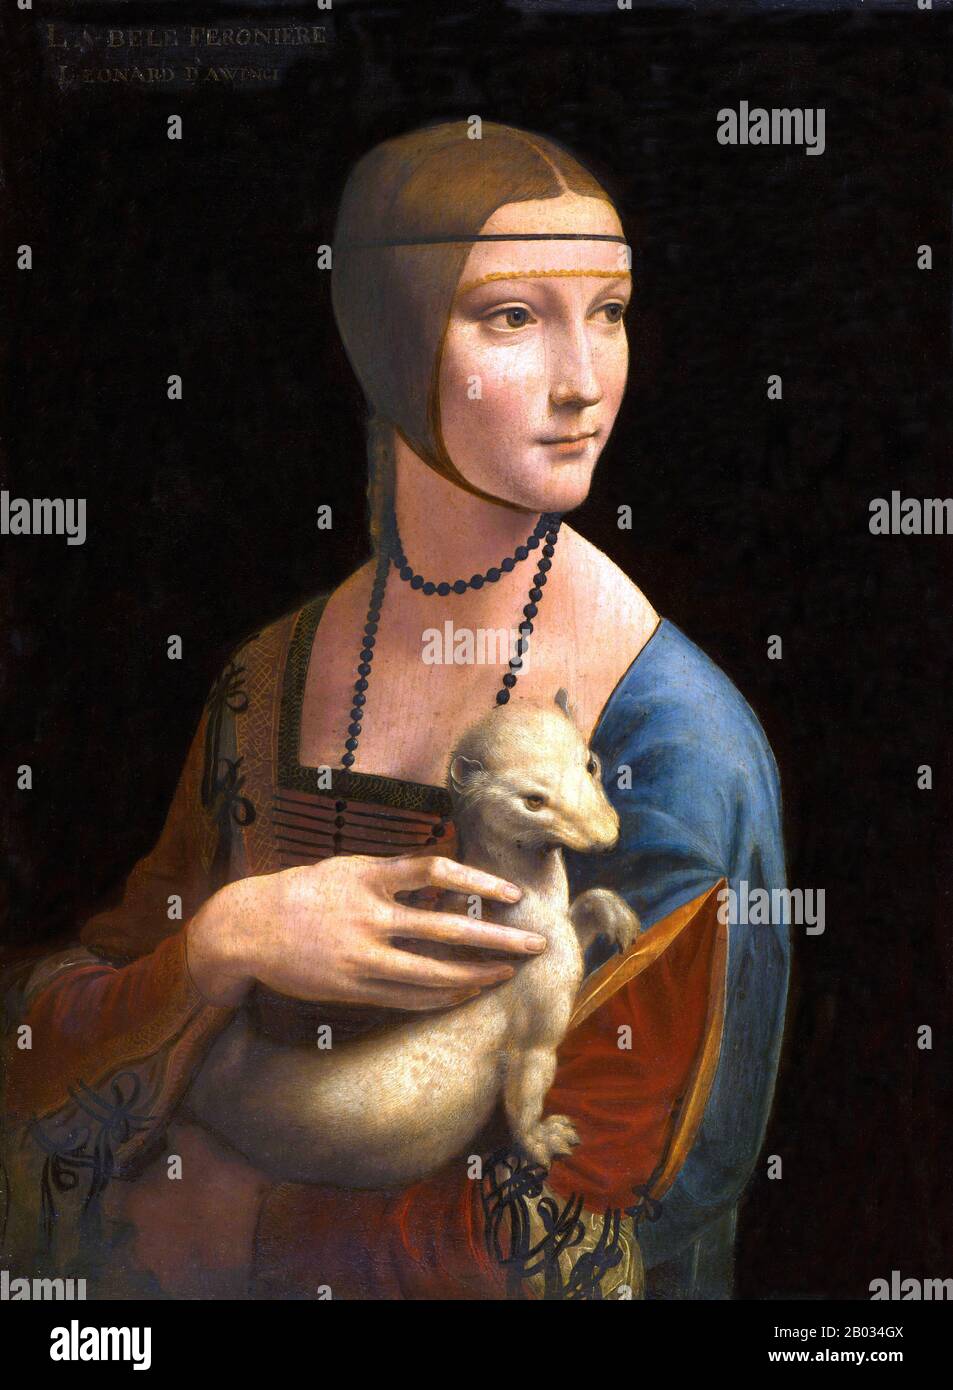 Lady with an Ermine (in italiano: Dama con l'ermellino) è un dipinto di Leonardo da Vinci del 1489-1490. Oggetto del ritratto è Cecilia Gallerani, dipinta in un momento in cui era la padrona di Ludovico Sforza, Duca di Milano, e Leonardo era al servizio del duca. Il dipinto è esposto al Museo Czartoryski, Cracovia, Polonia. Foto Stock